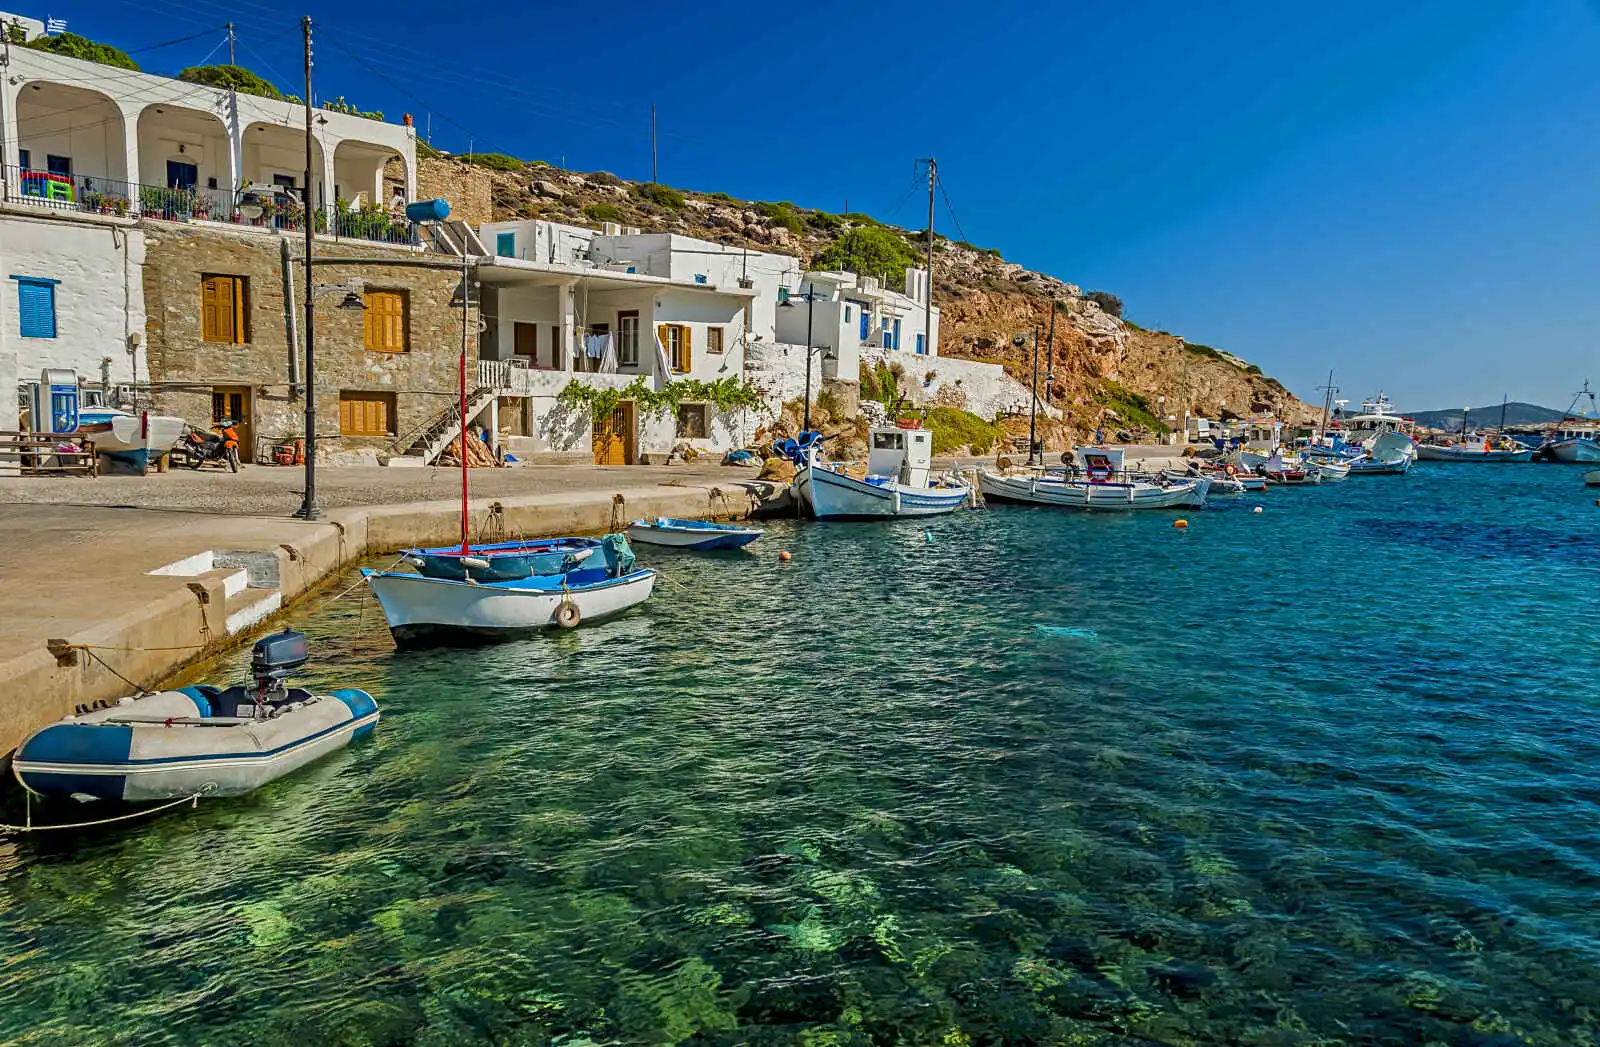 Grèce - Iles grecques - Les Cyclades - Mykonos - Paros - Sifnos - Combiné Cyclades : Mykonos, Sifnos et Paros